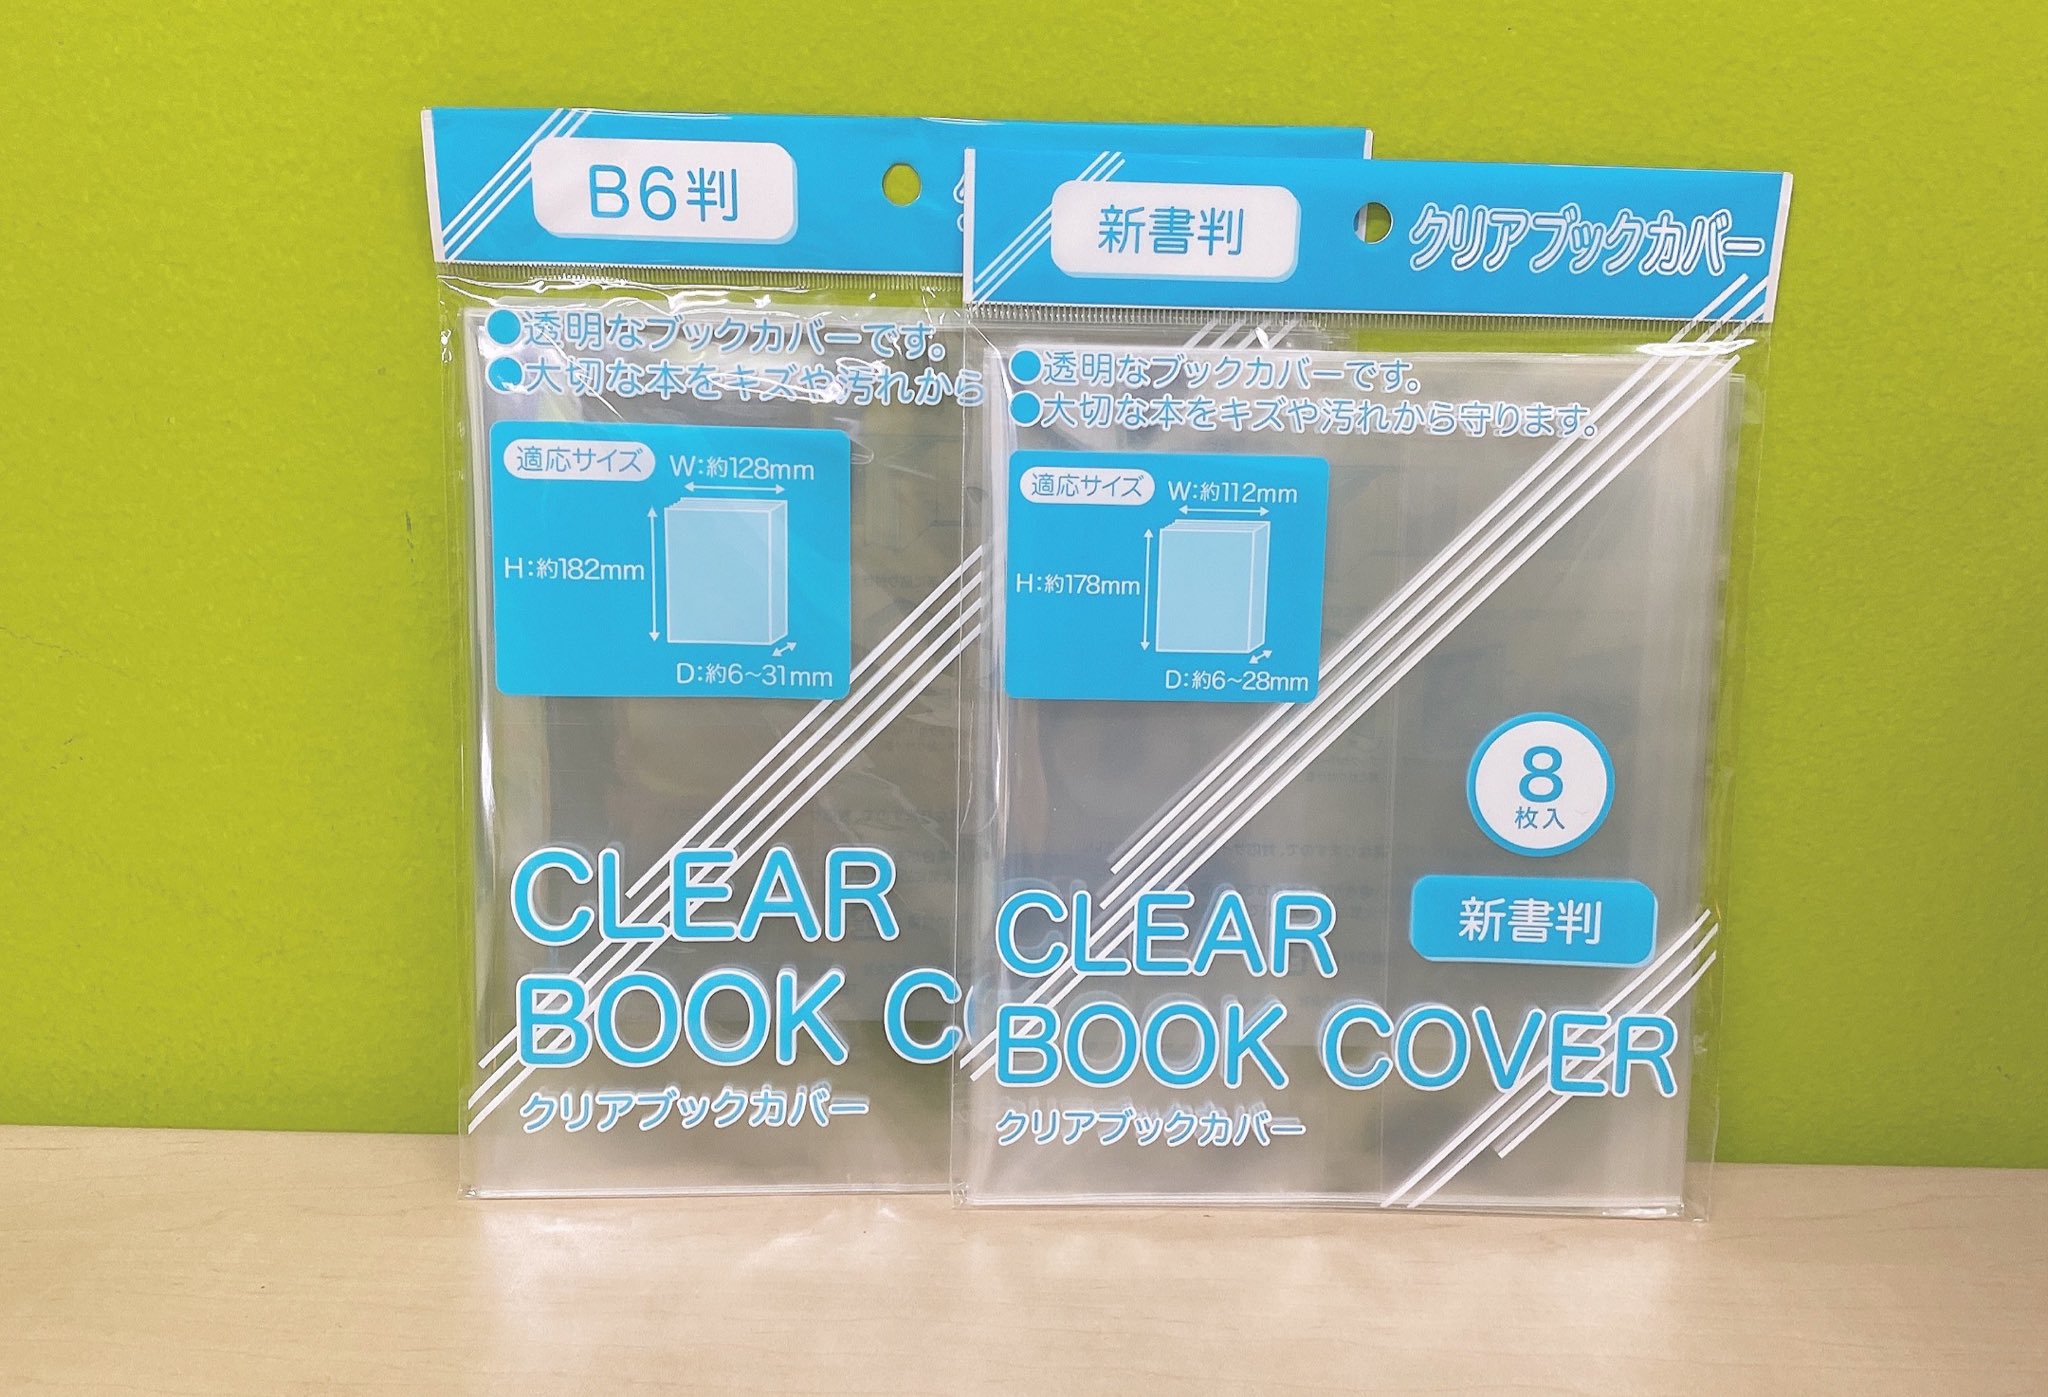 Tsutaya宇多津店 商品のご紹介 本日はクリアブックカバーです 以前からお問い合わせの多かった 透明のカバーが入荷しました 大切なコミックや書籍を キズや汚れから守ってくれます クリアブックカバー ブックカバー 透明カバー コミック 本